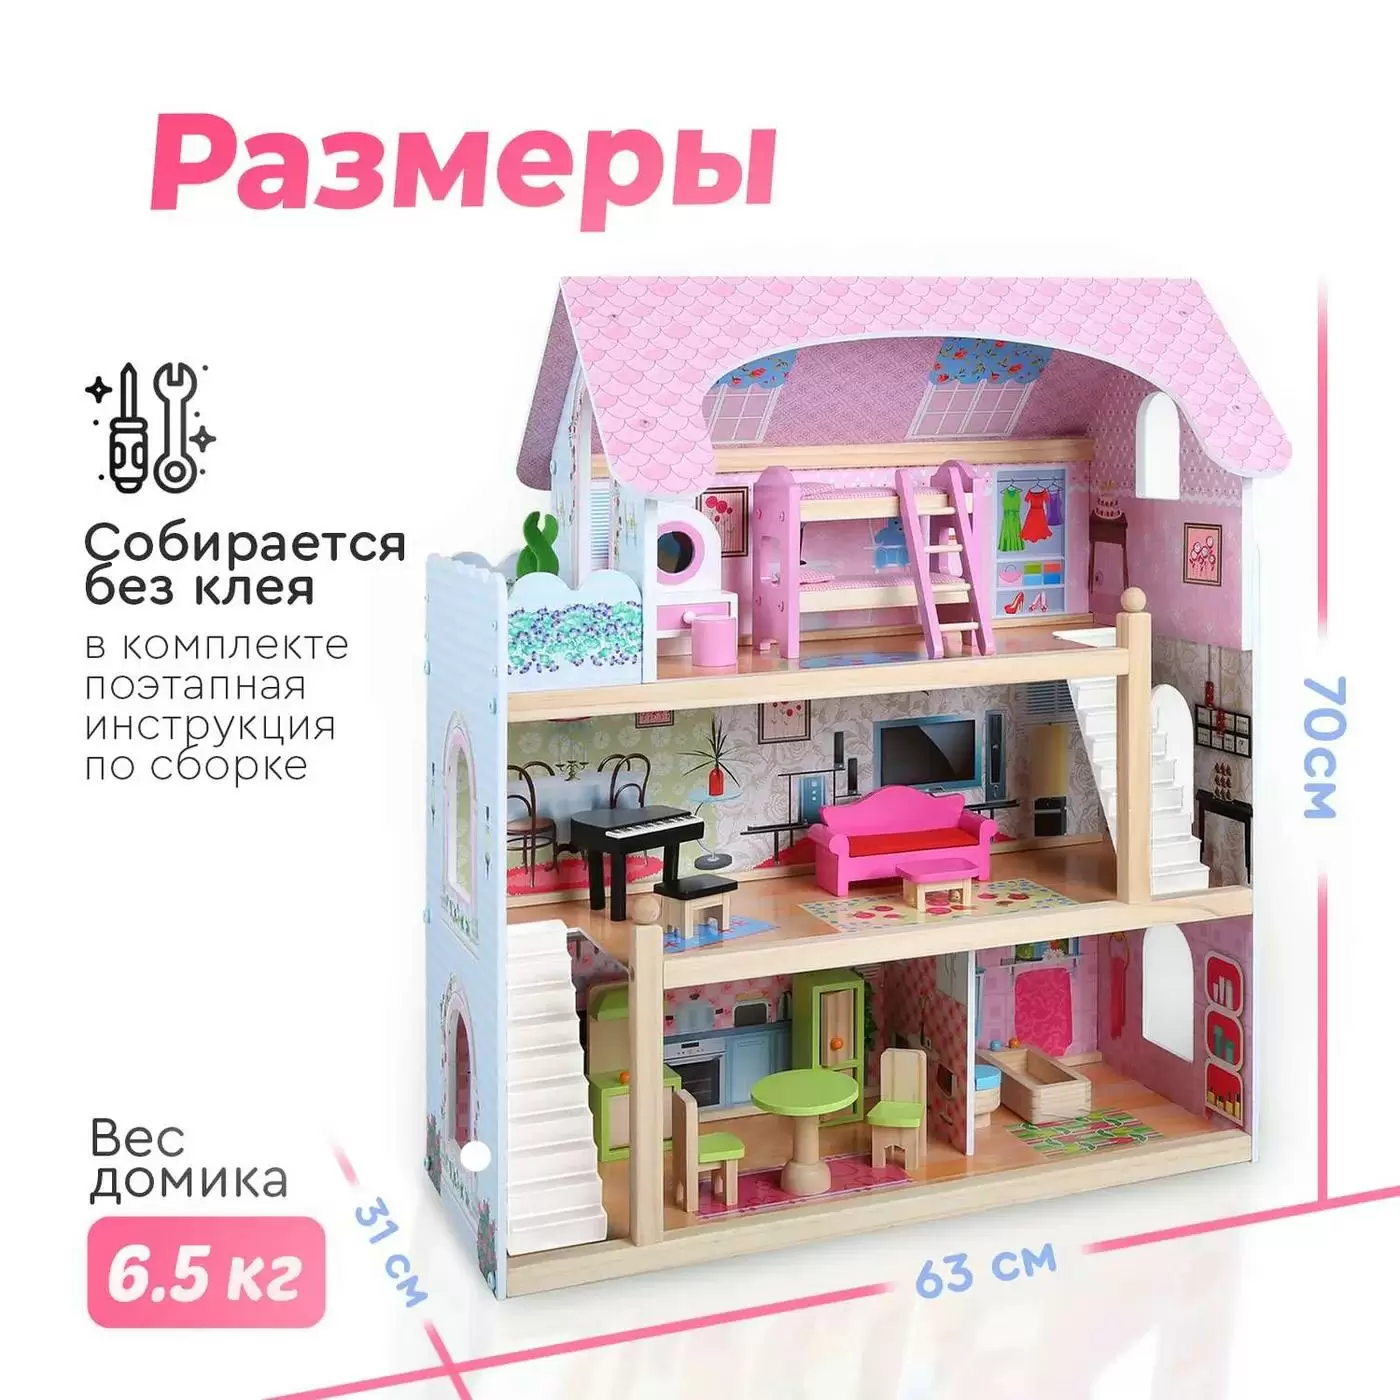 Кукольный домик Mila Tomix натур дерево-пластик 62*31*70см